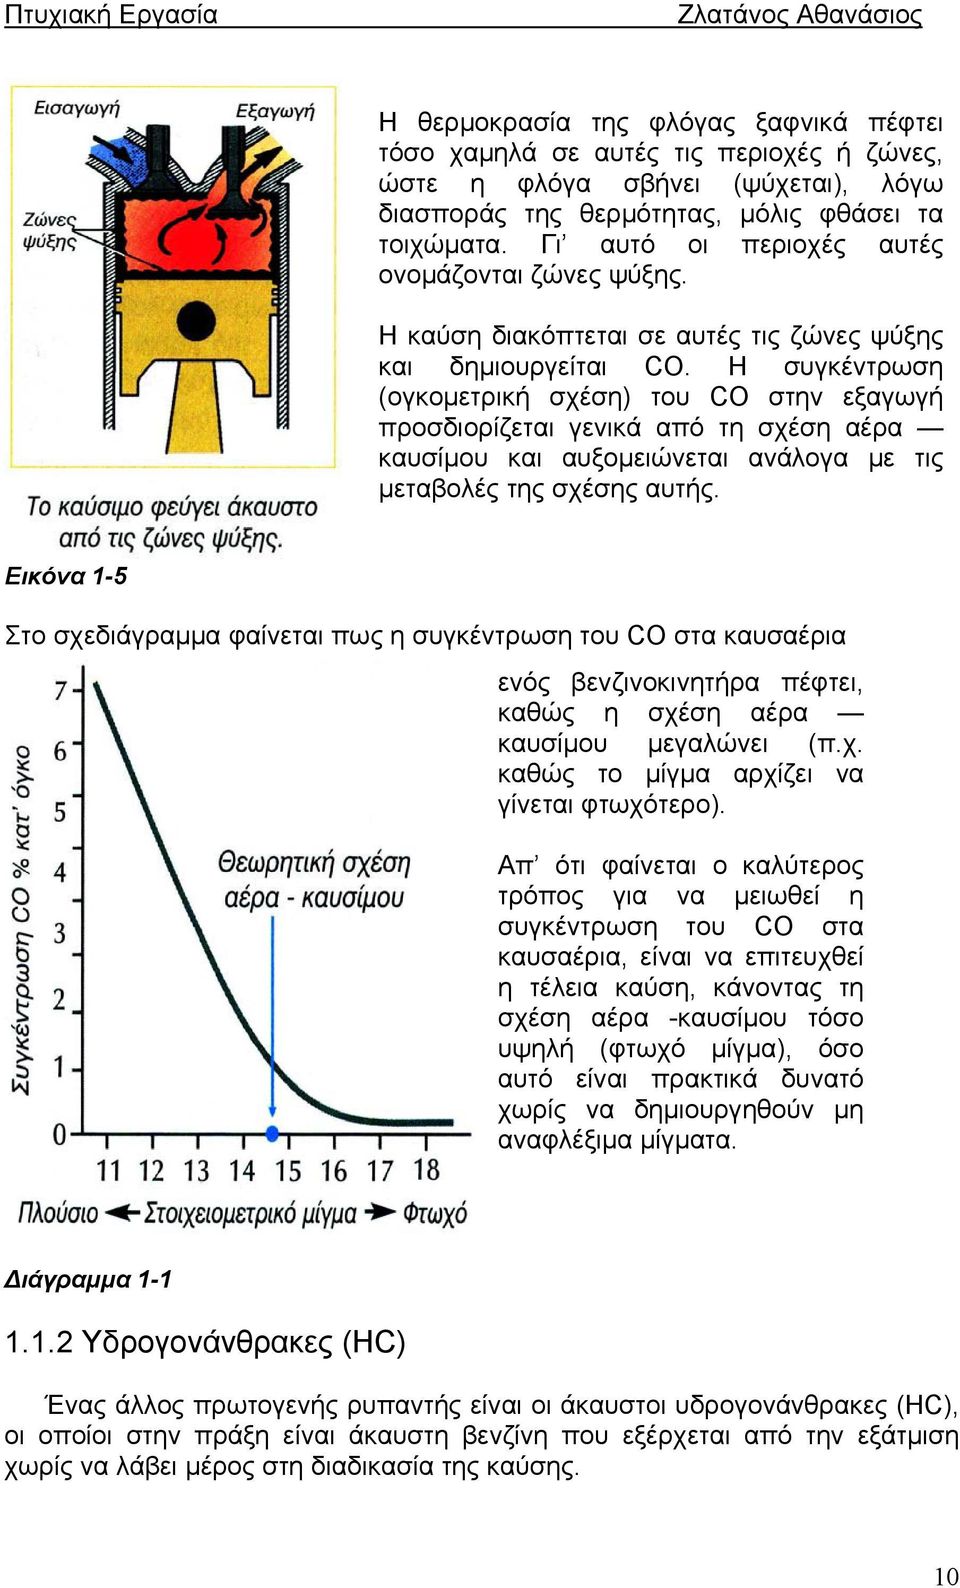 Η συγκέντρωση (ογκομετρική σχέση) του CO στην εξαγωγή προσδιορίζεται γενικά από τη σχέση αέρα καυσίμου και αυξομειώνεται ανάλογα με τις μεταβολές της σχέσης αυτής.